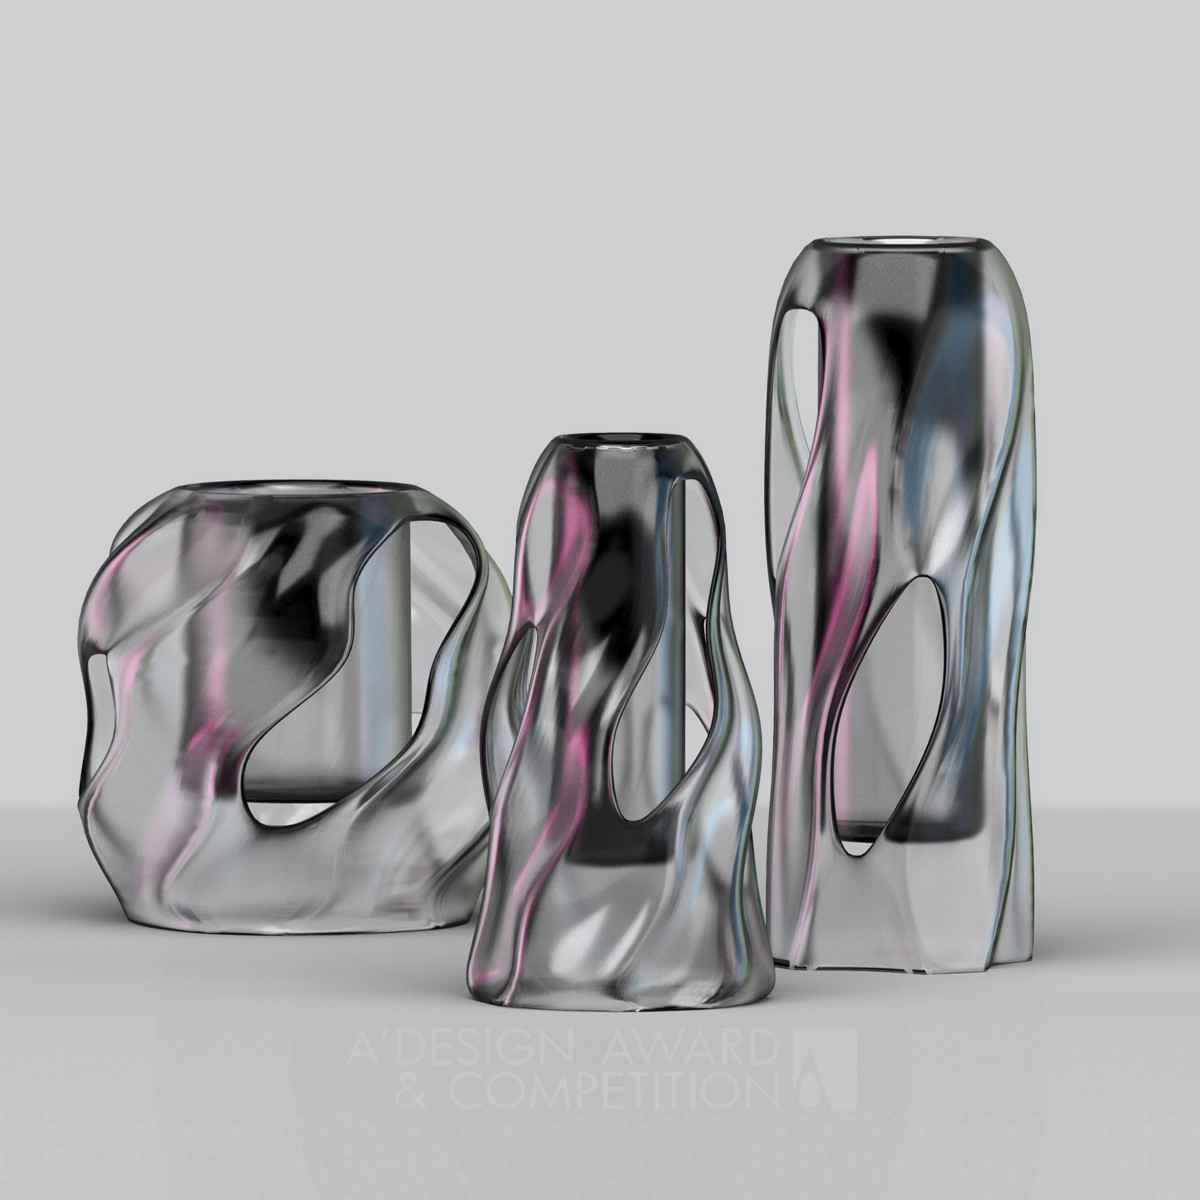 LAFA Endüstriyel Tasarım Koleji'nden 3D Baskılı Vazo Serisi: Mila